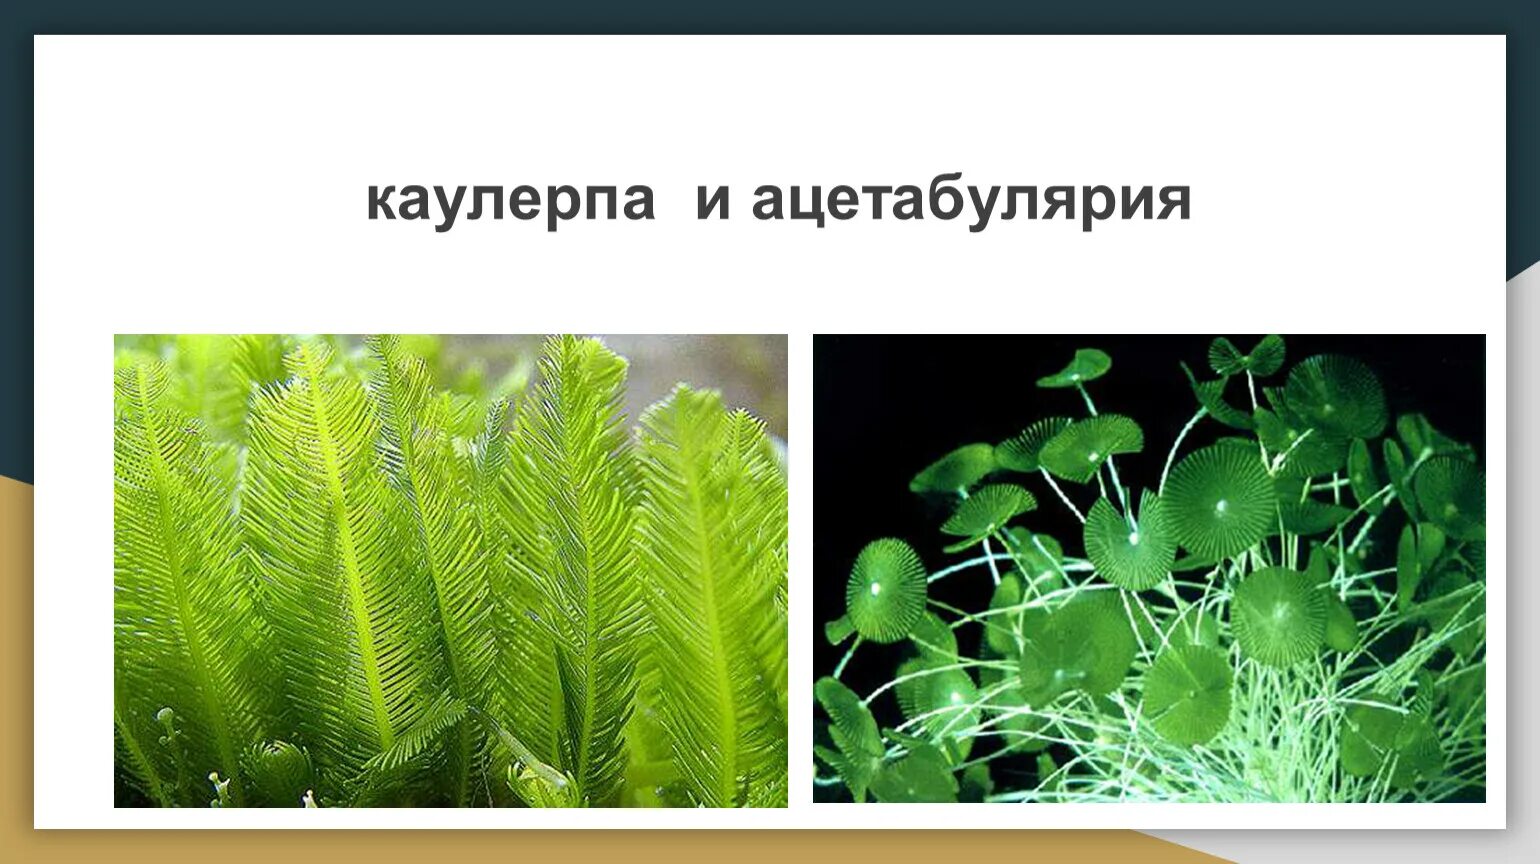 Споровые растения примеры названия. Споровые водоросли. Споровые растения. Ацетабулярия. Каулерпа.